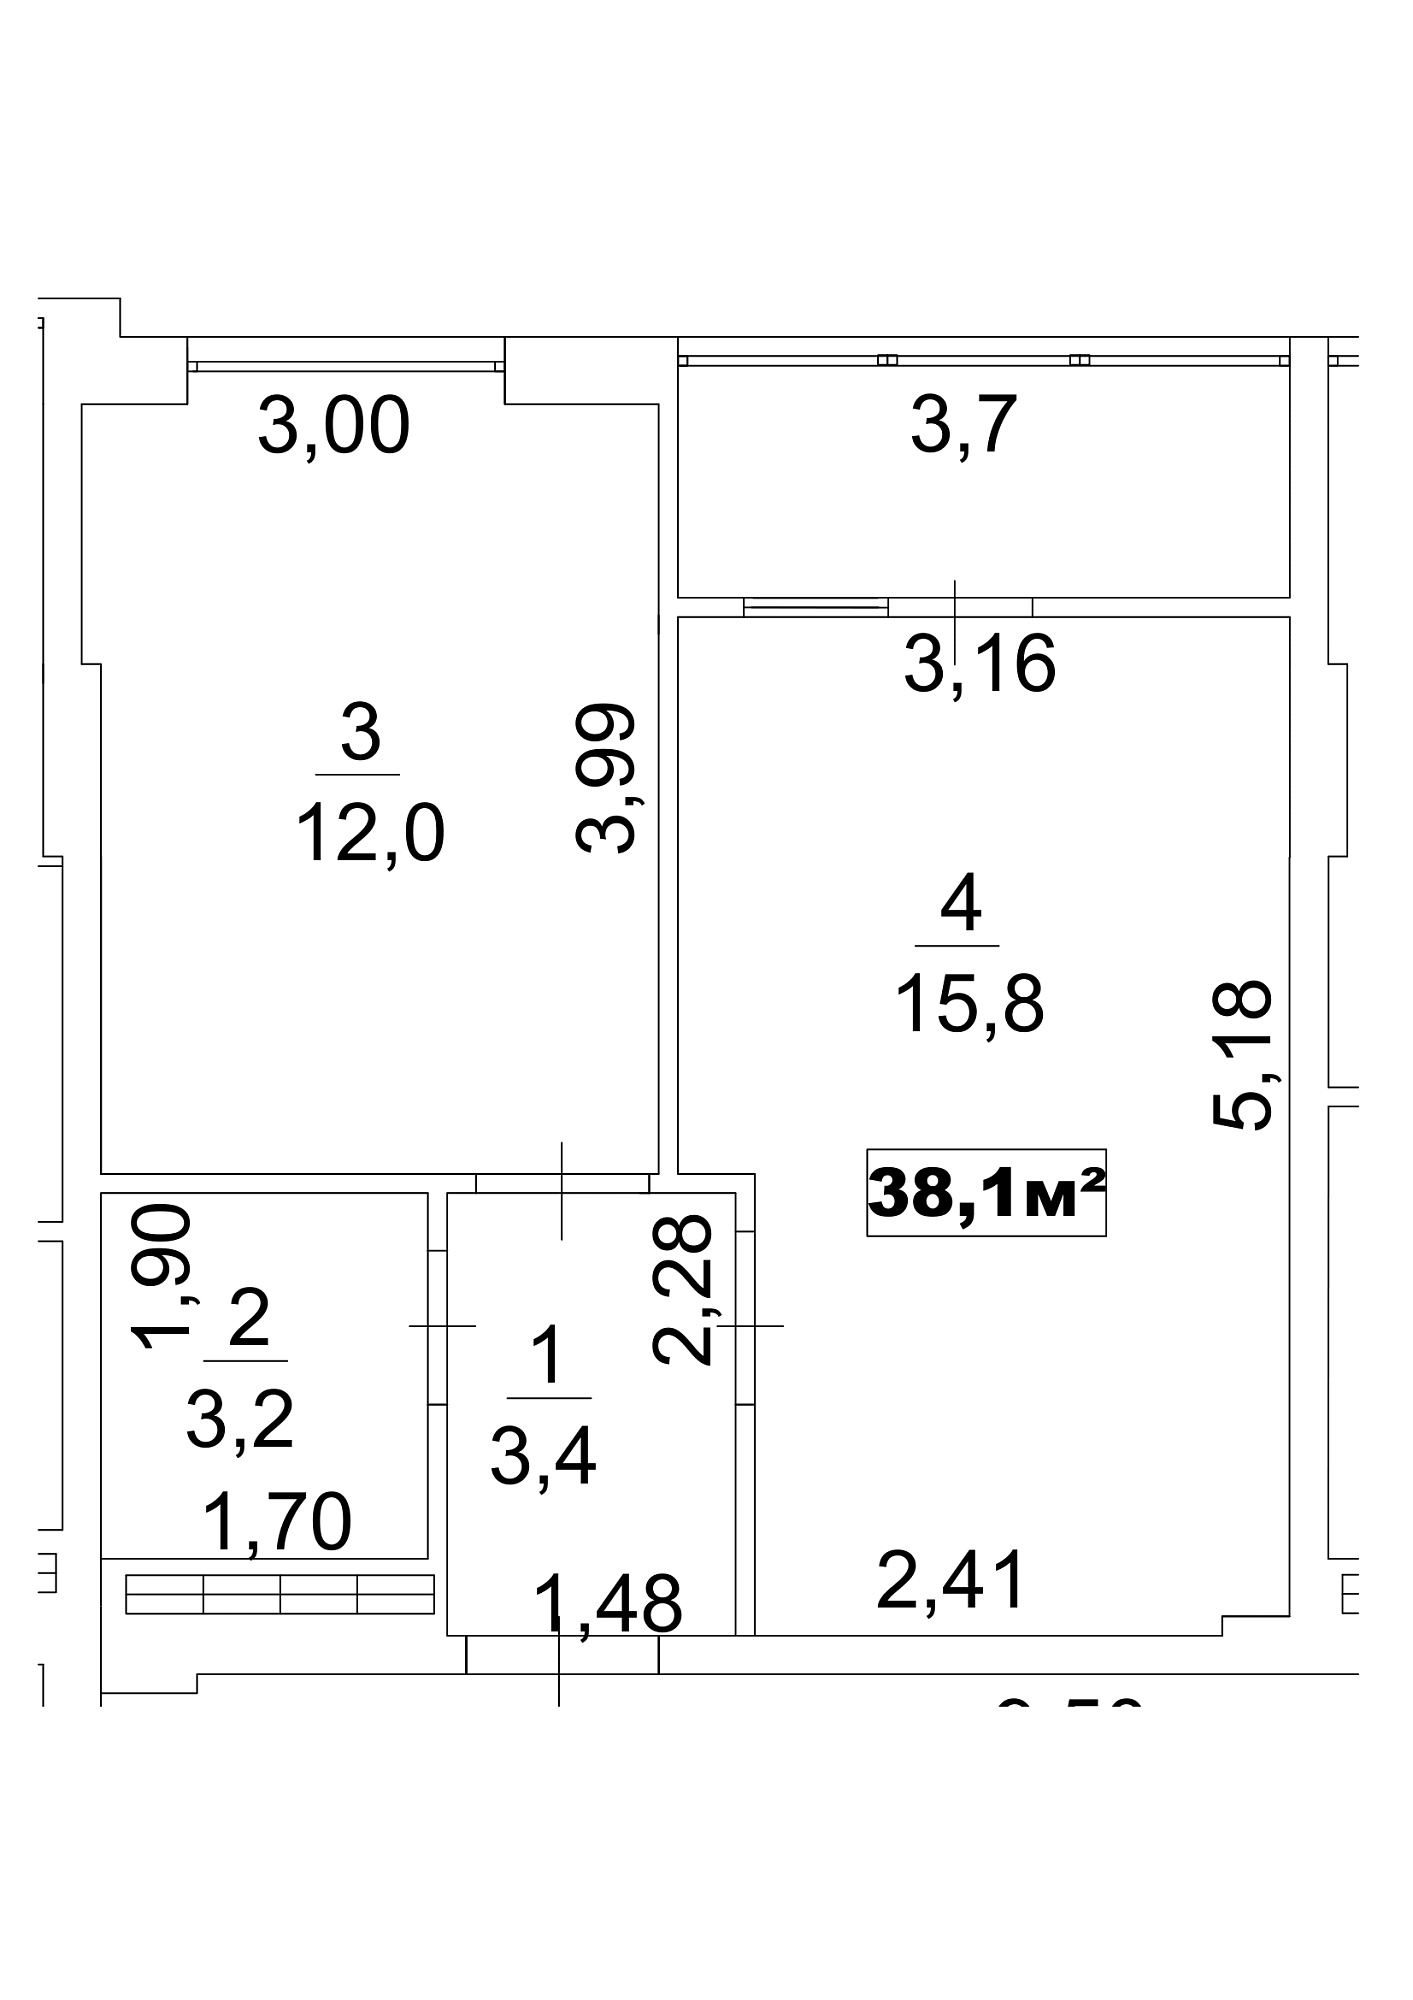 Планировка 1-к квартира площей 38.1м2, AB-13-03/00021.